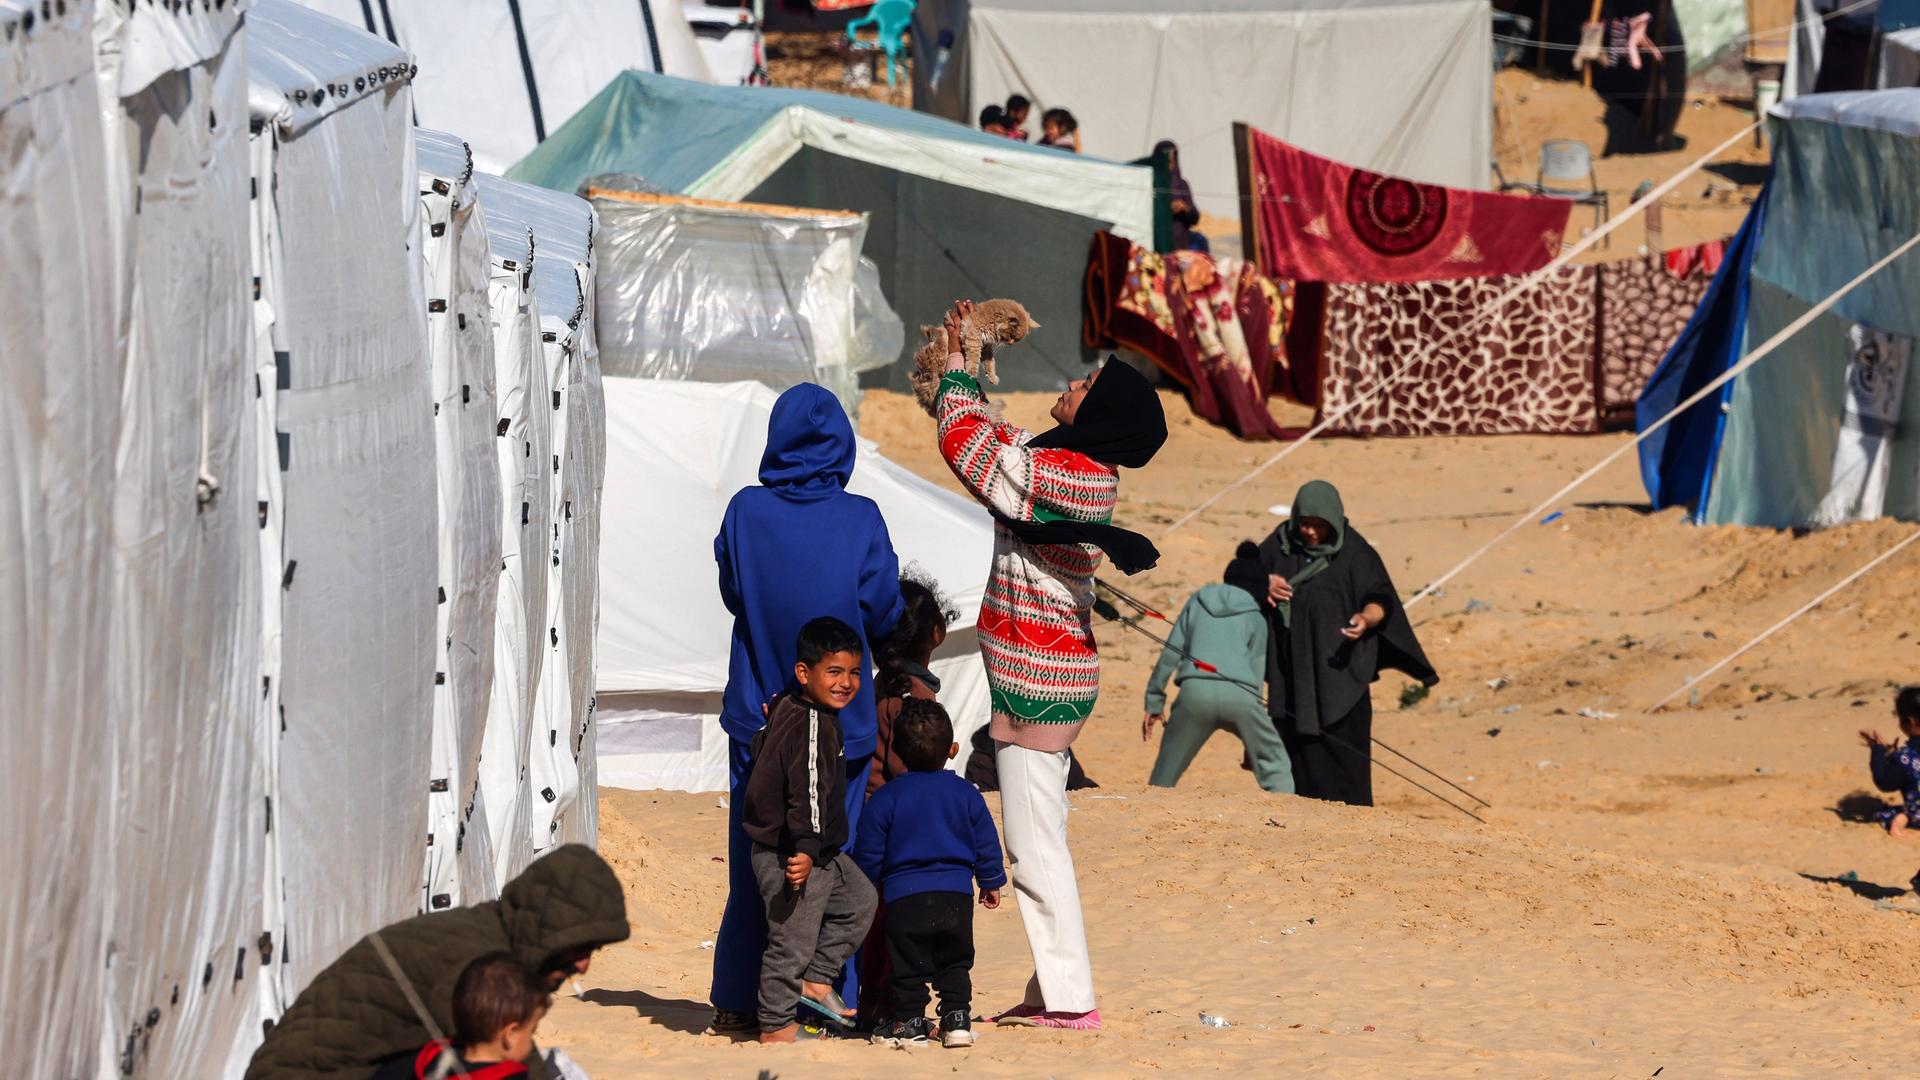 Frauen und Kinder stehen in einem Flüchtlingslager in Rafah zwischen Zelten. Eine Person hält eine Katze in die Höhe.